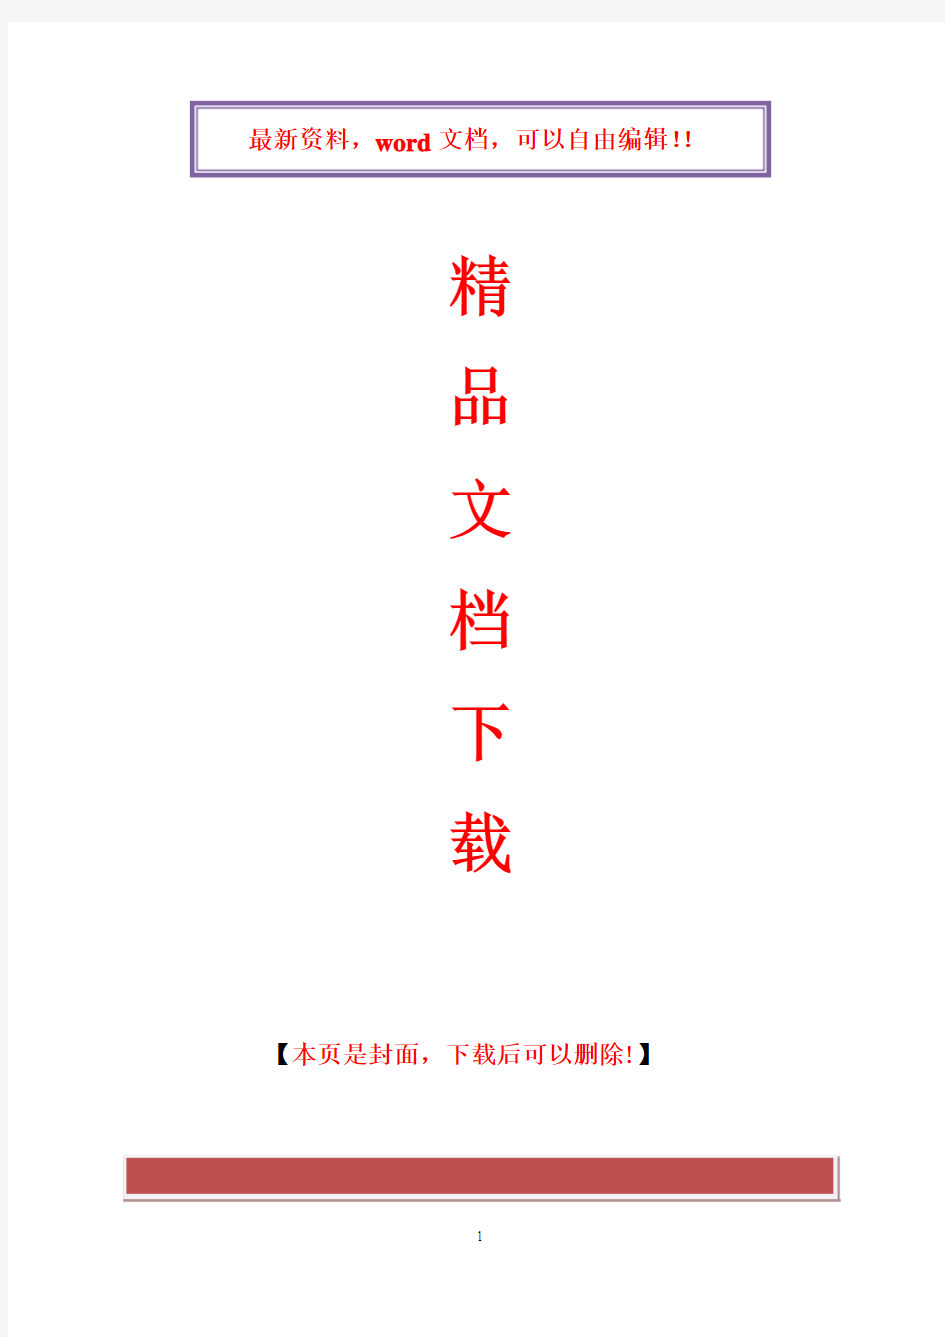 2017年电大最新古代汉语形成性考核册作业答案提示答案